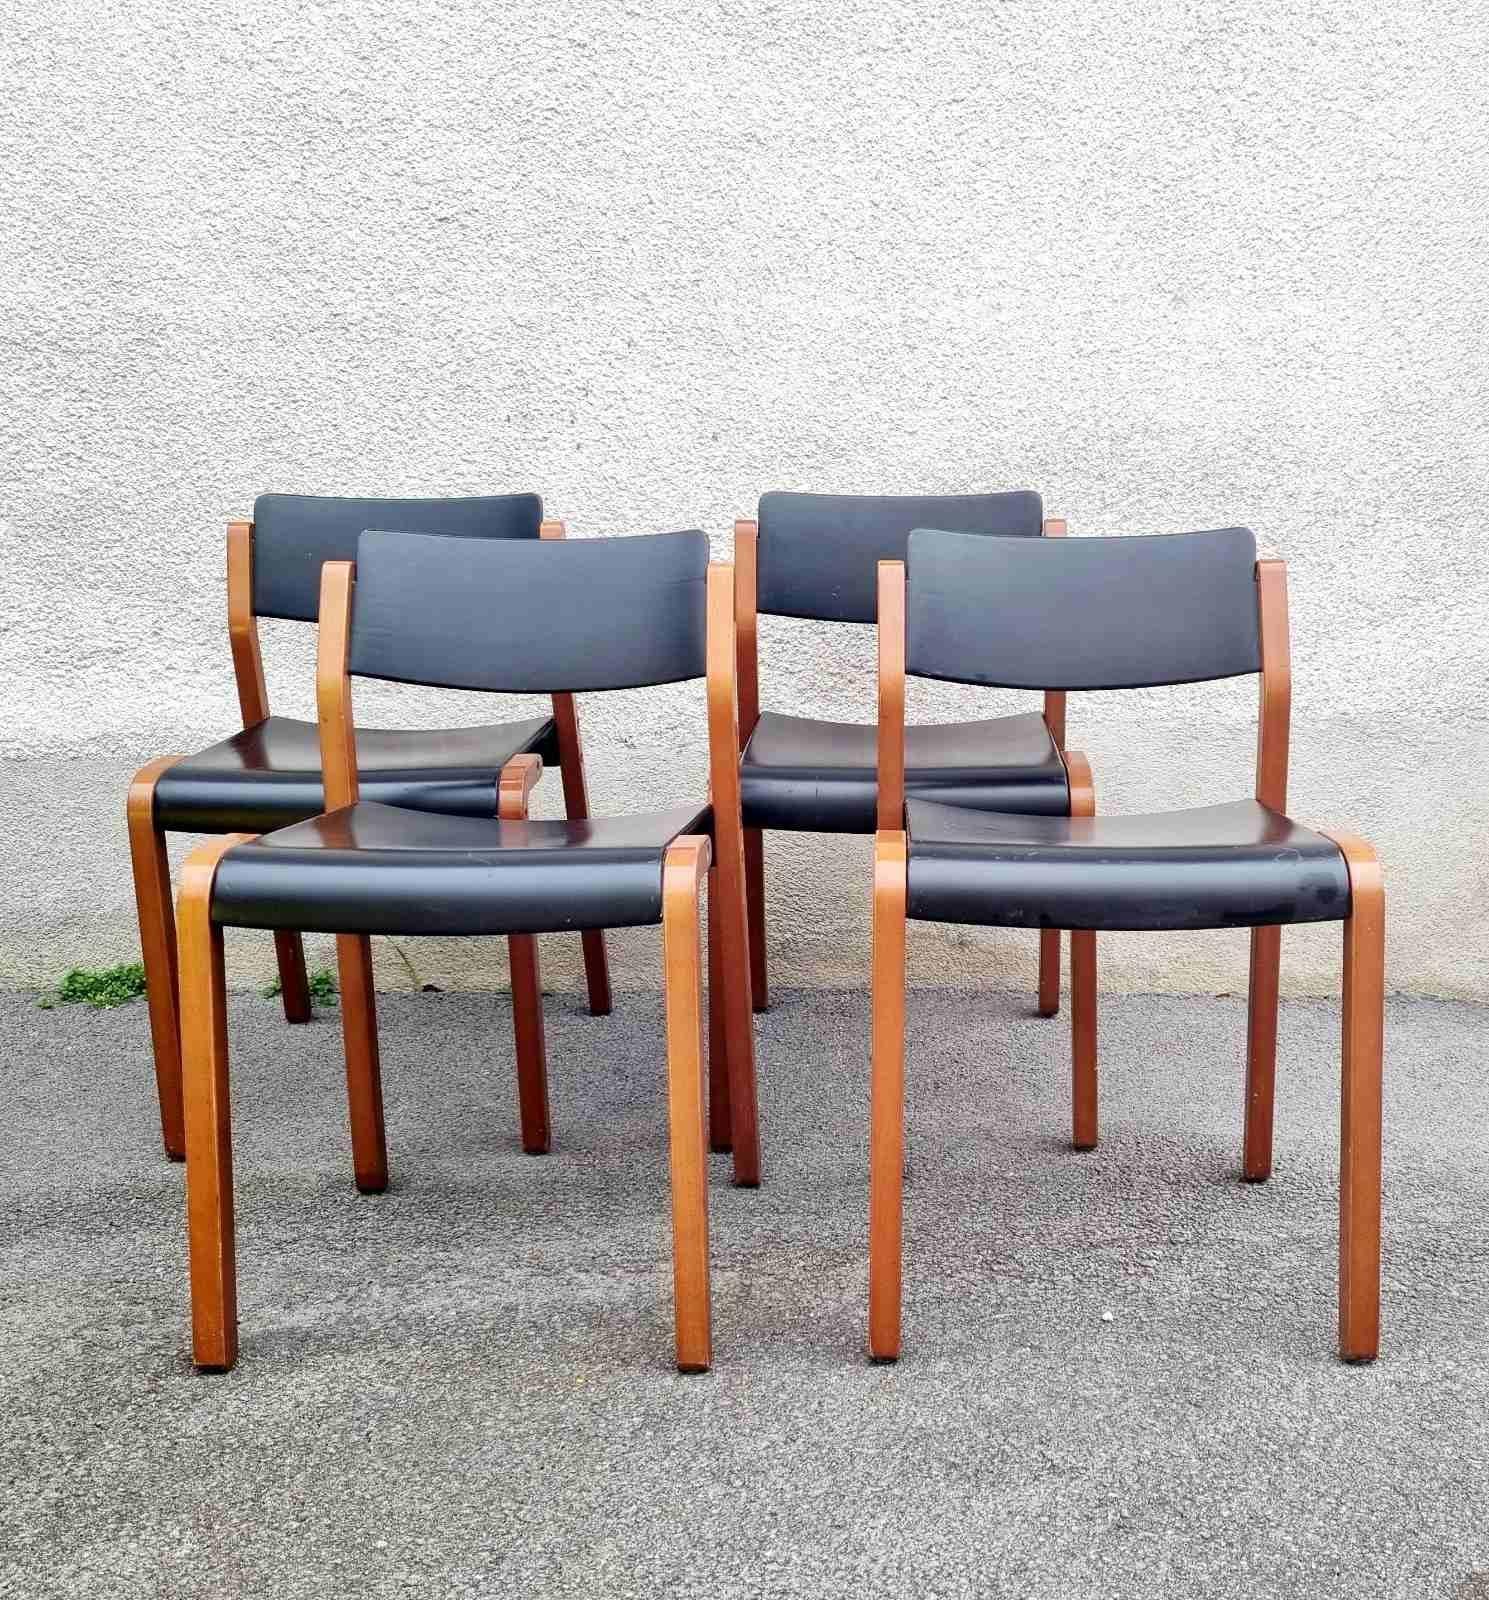 Italian Modern Gruppo Chairs, De Pas, D'Urbino & Lomazzi for Bellato, Italy 80s For Sale 3